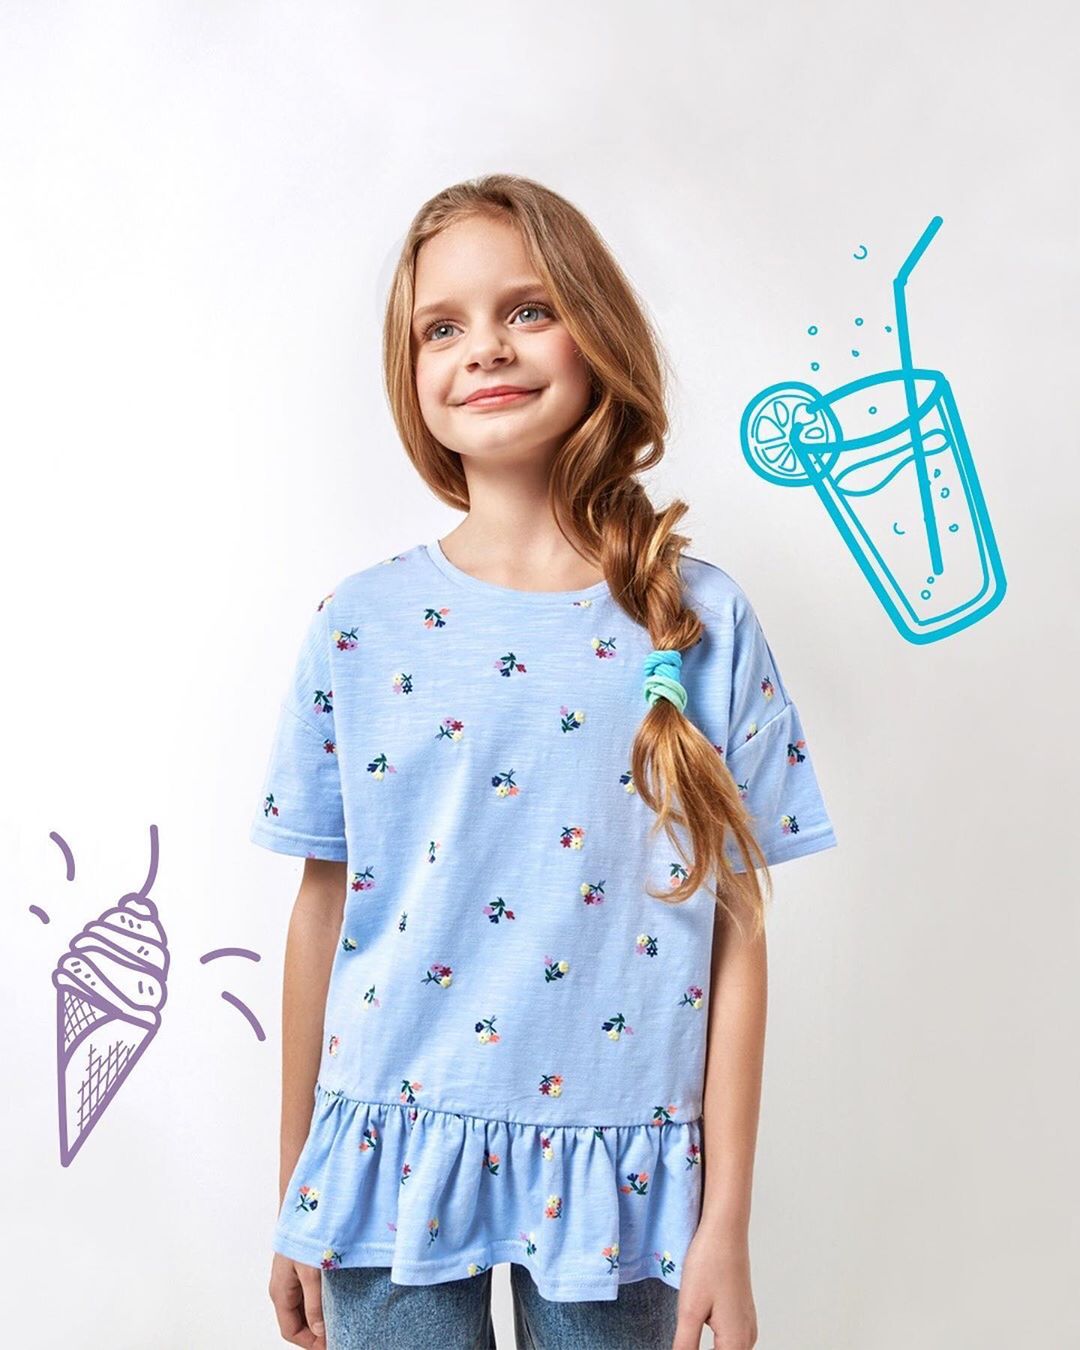 Acoola Kids - Стильные модели футболок для девочек уже ждут вас в магазинах Acoola 😉. Выбирайте понравившуюся модель и спешите за покупками 🛍.
⠀
⭐ Голубая футболка с цветочным принтом: 699₽. Арт.: 202...